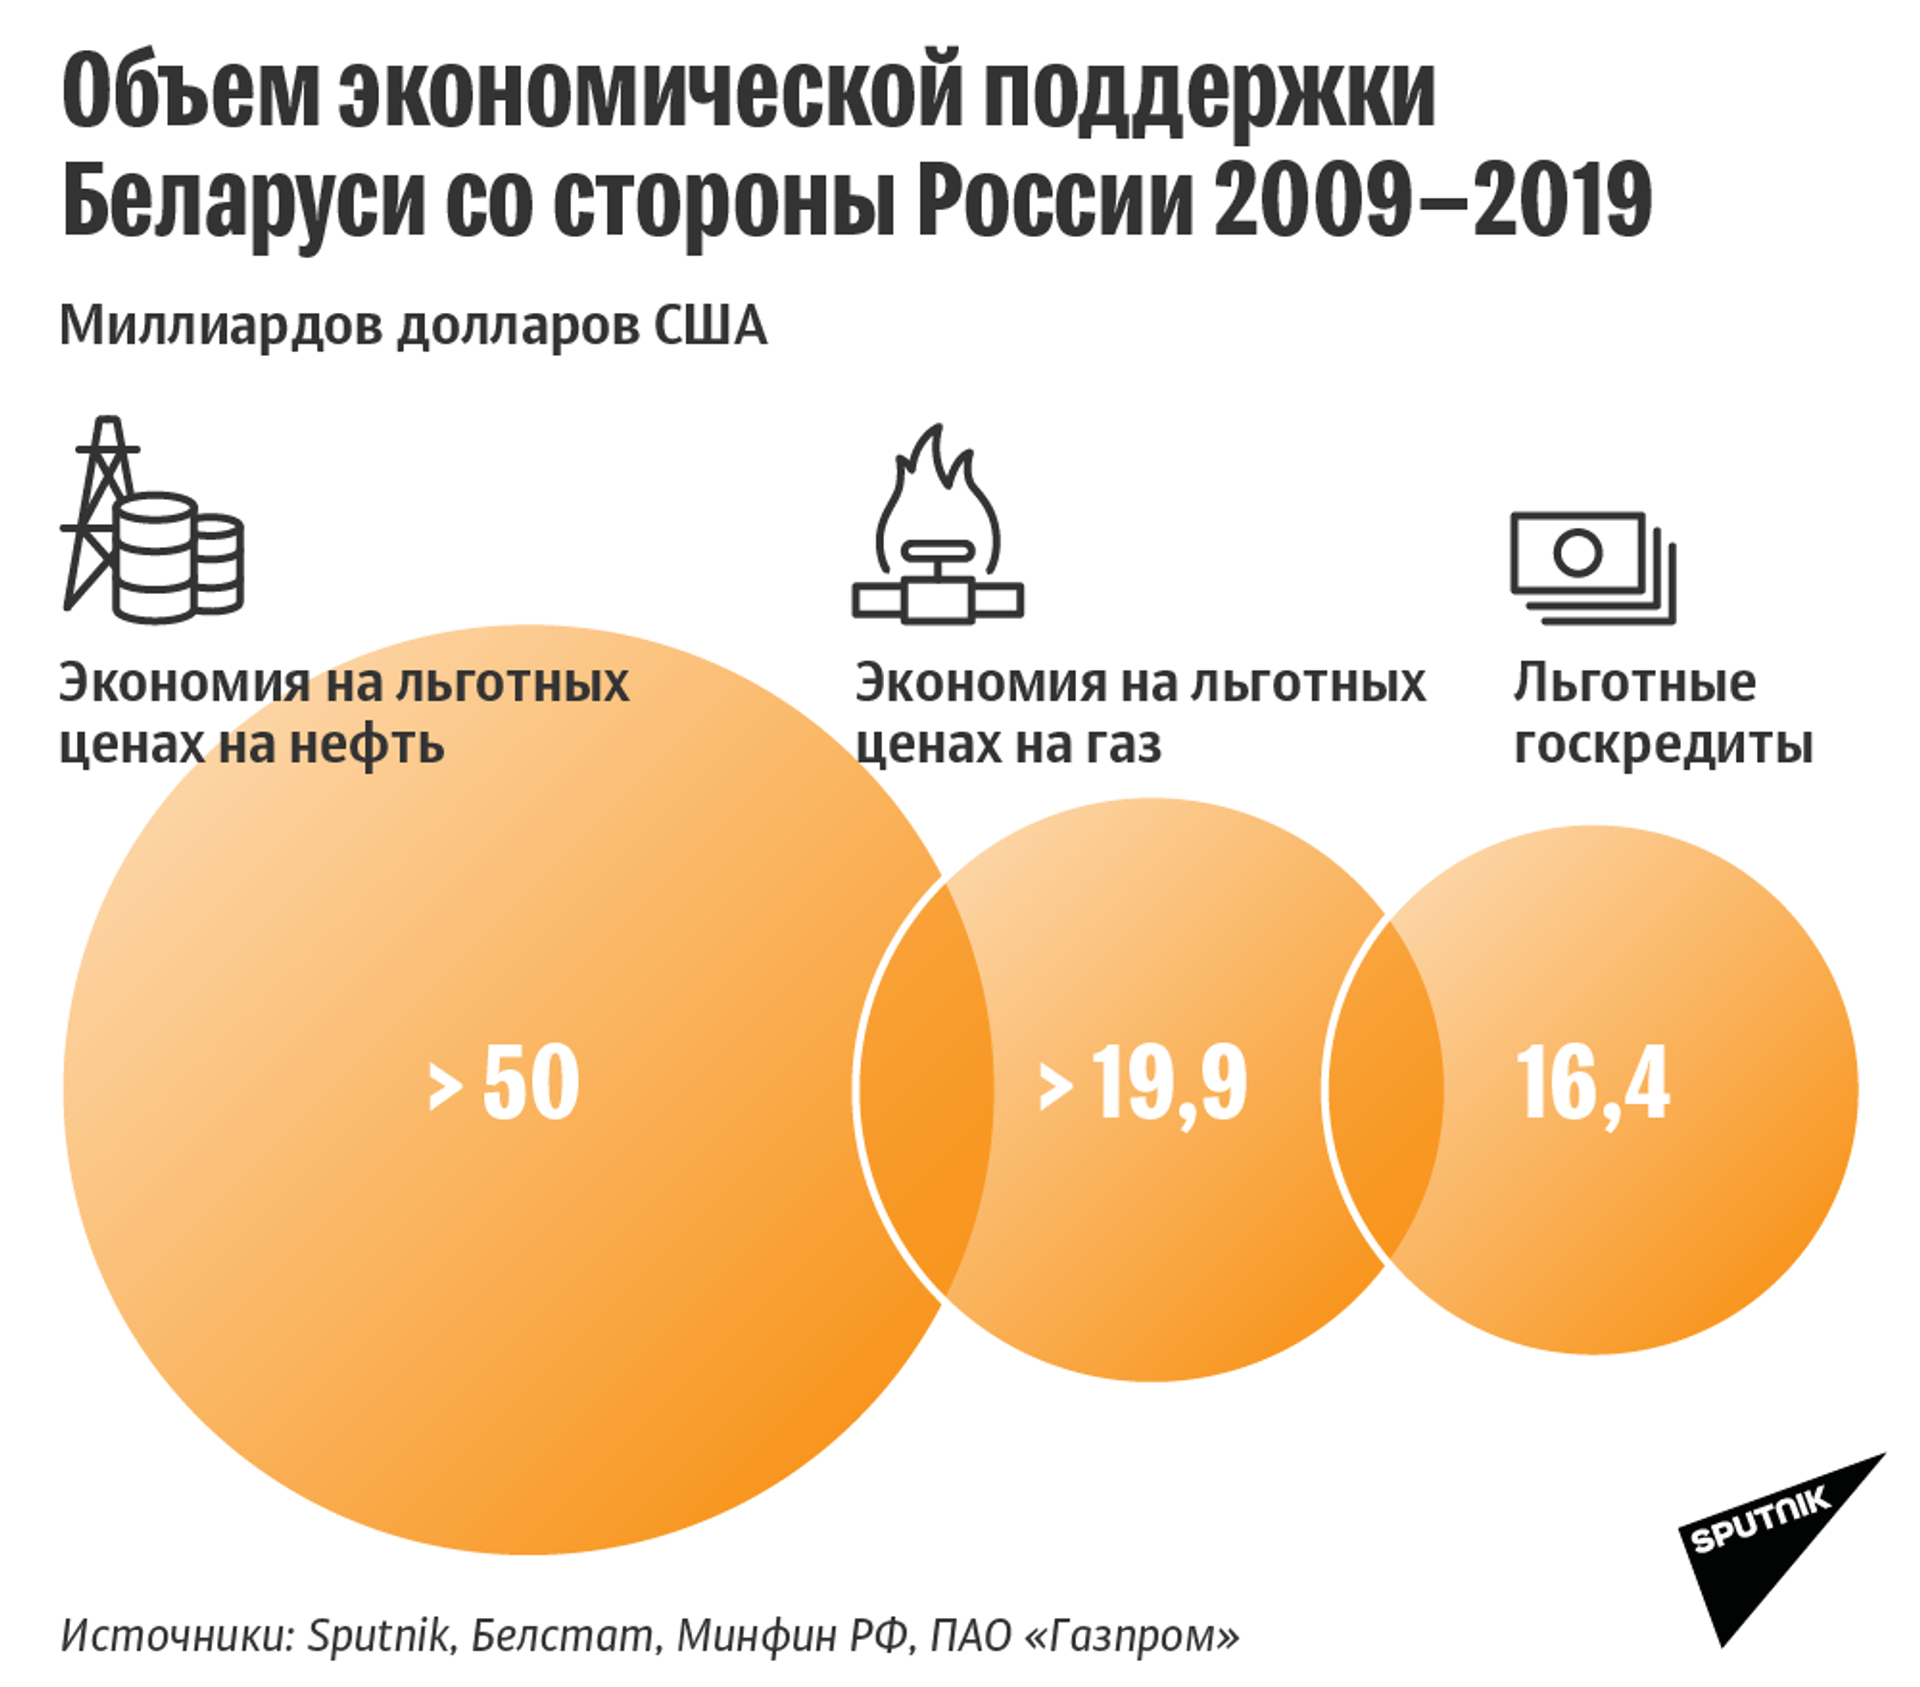 Вопрос привлечения нового кредита прорабатывается - Минфин - Sputnik Беларусь, 1920, 26.02.2021